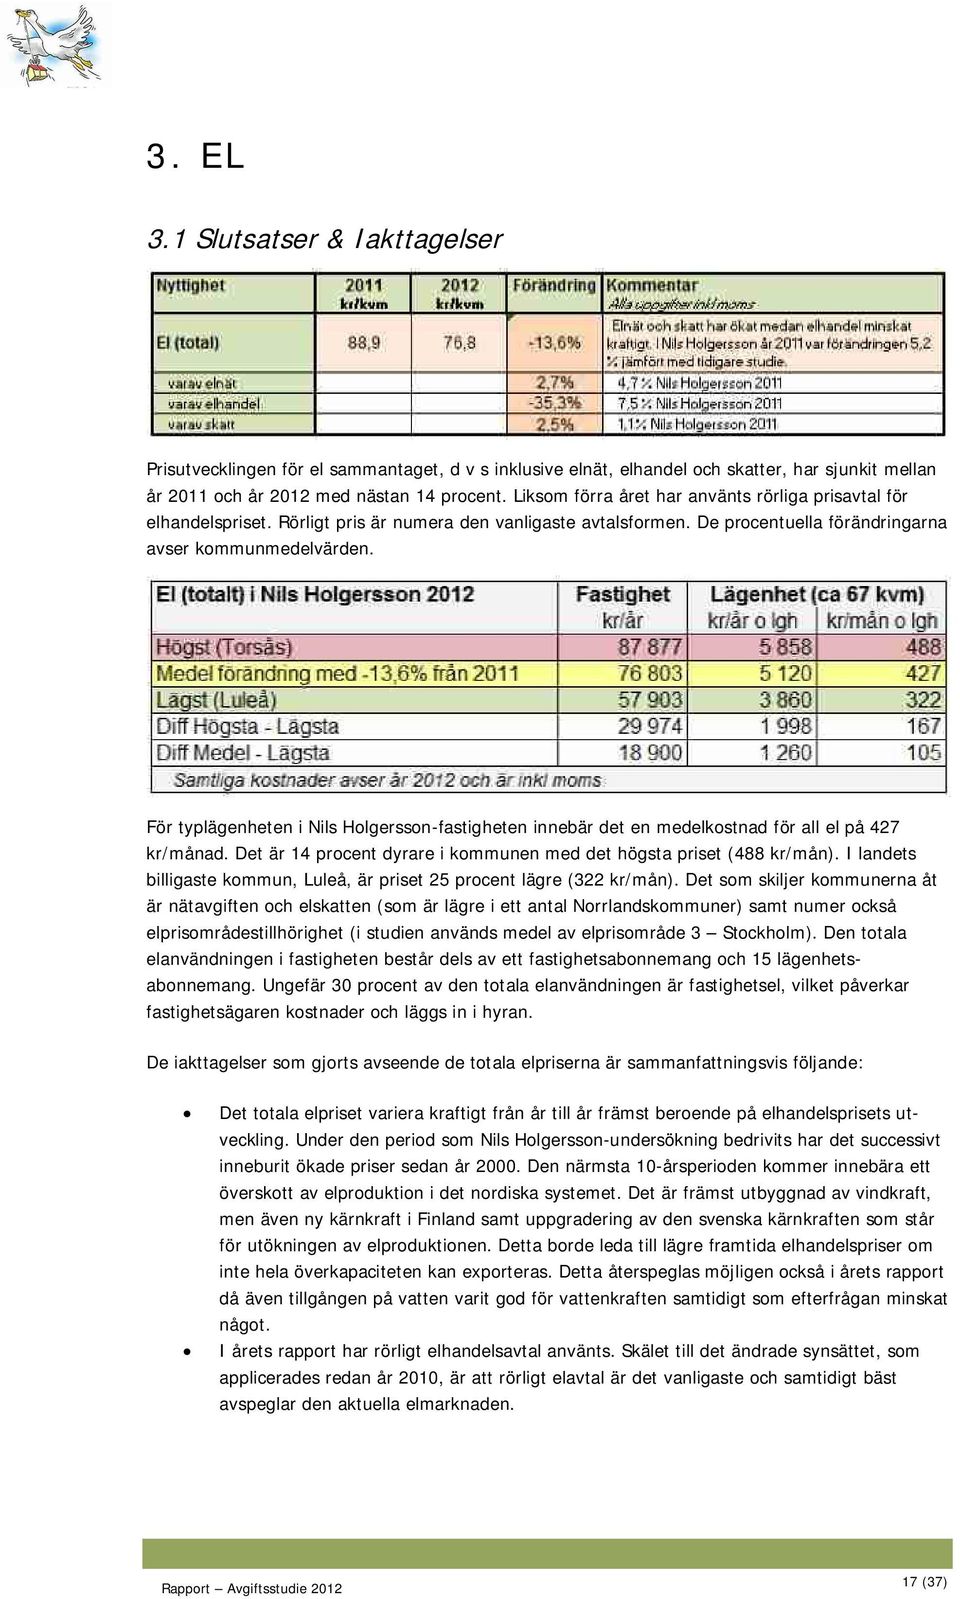 För typlägenheten i Nils Holgersson-fastigheten innebär det en medelkostnad för all el på 427 kr/månad. Det är 14 procent dyrare i kommunen med det högsta priset (488 kr/mån).